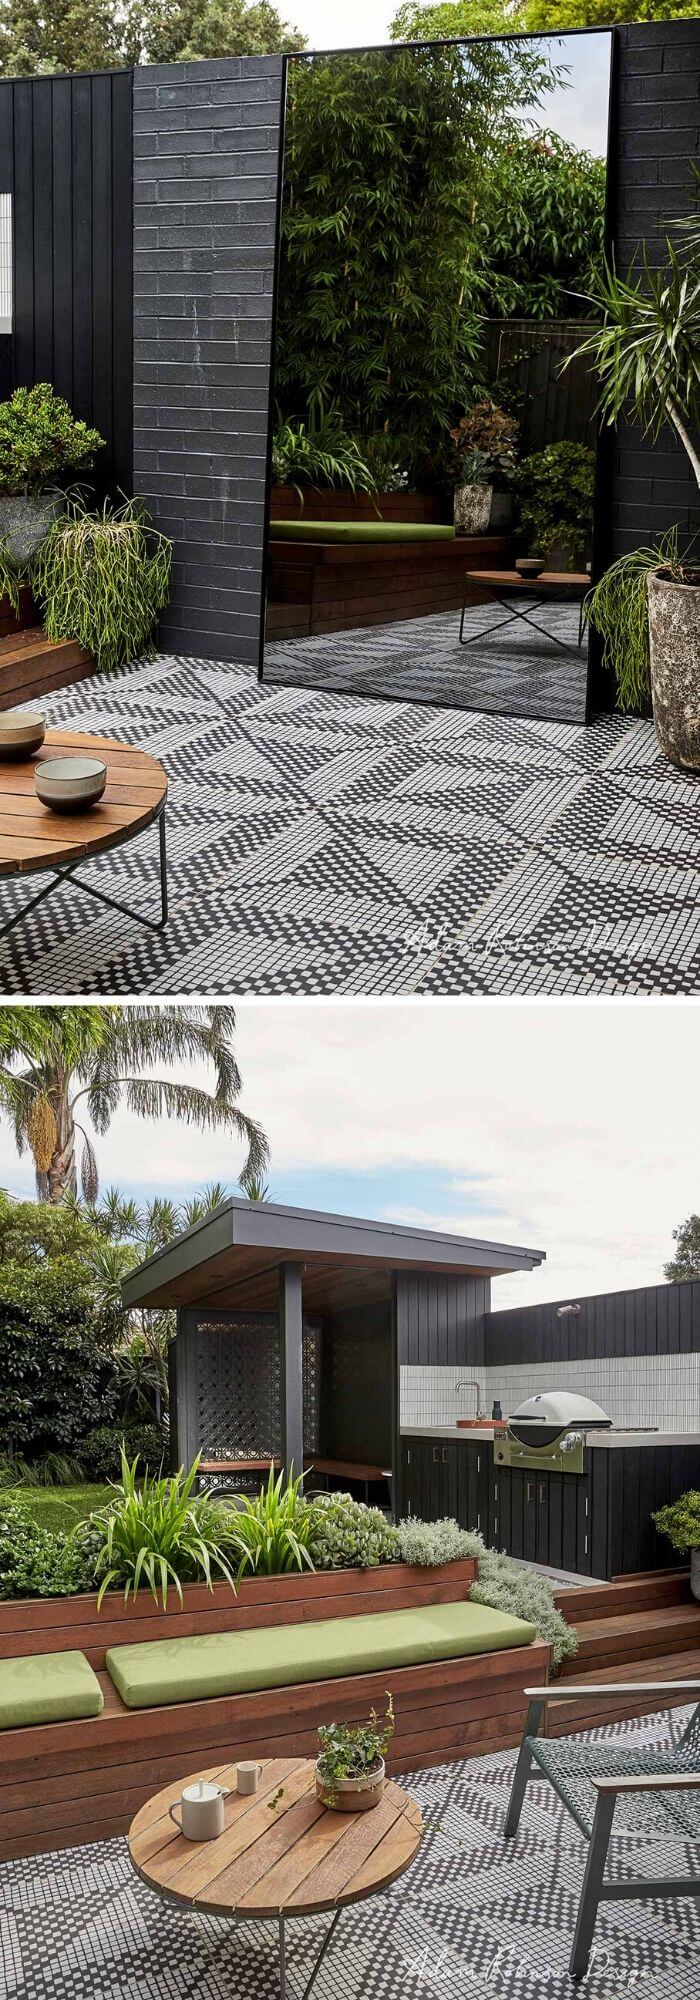 2 outdoor tile ideas